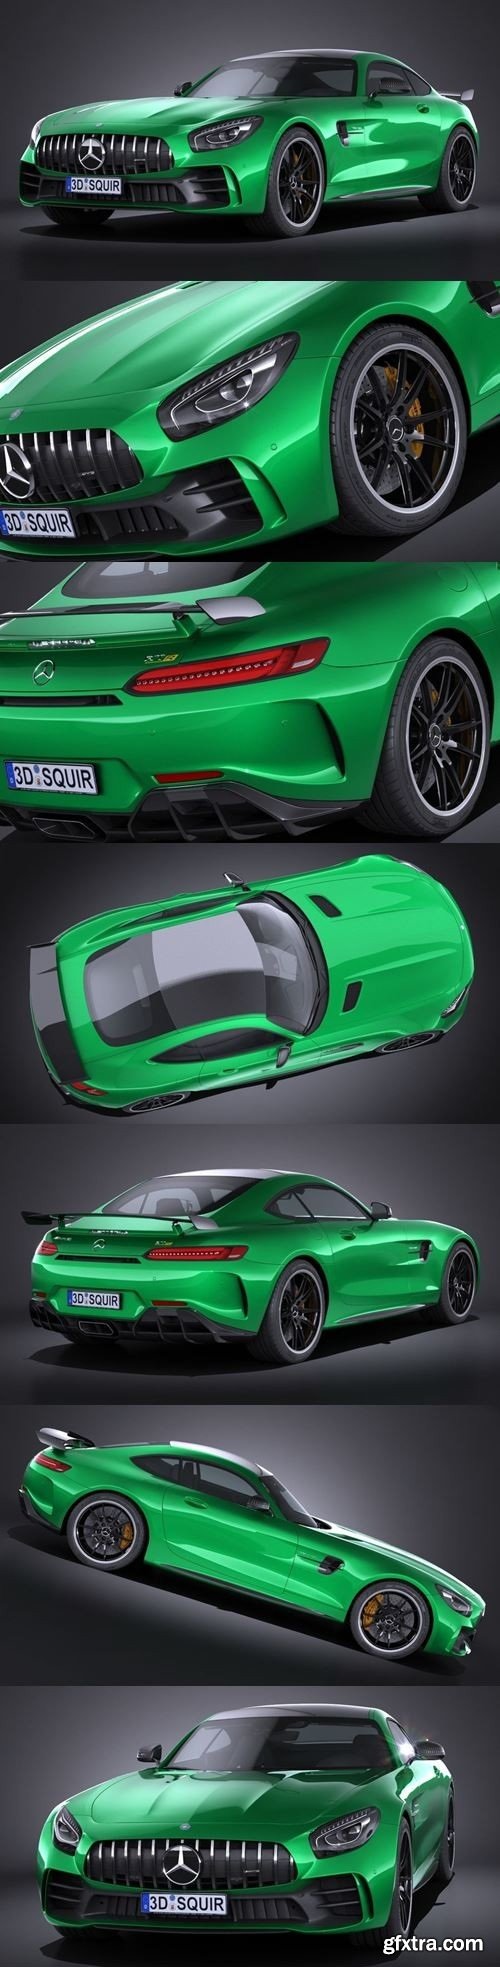 MERCEDES AMG GT R 2017 3D Model